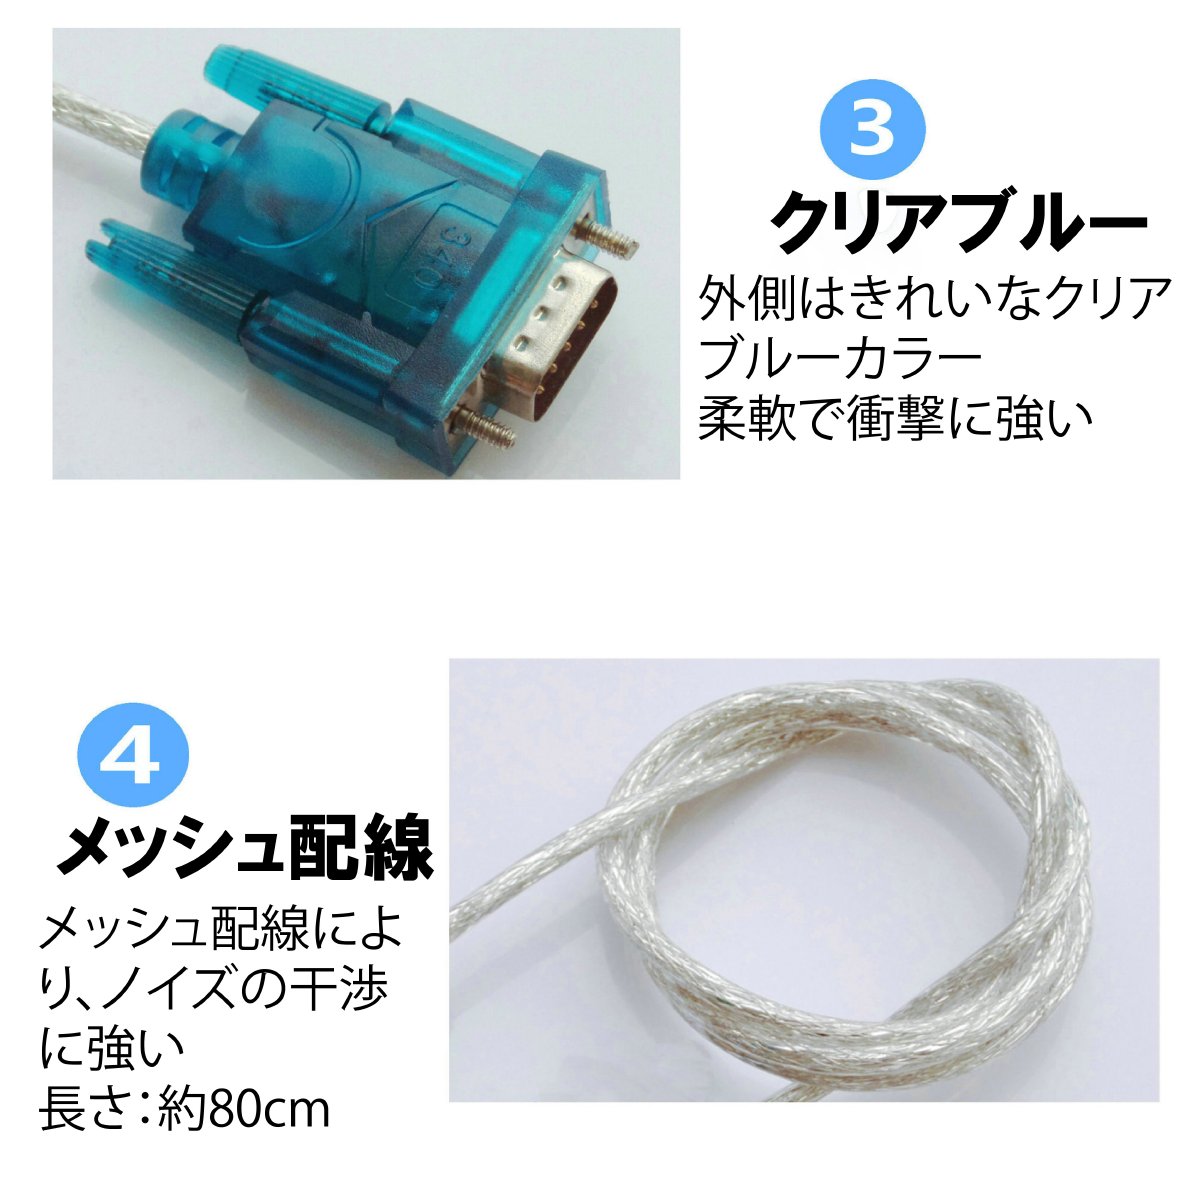 USB RS232C シリアル 変換 ケーブル D-SUB9ピン 80cm 動作テスト済 2個